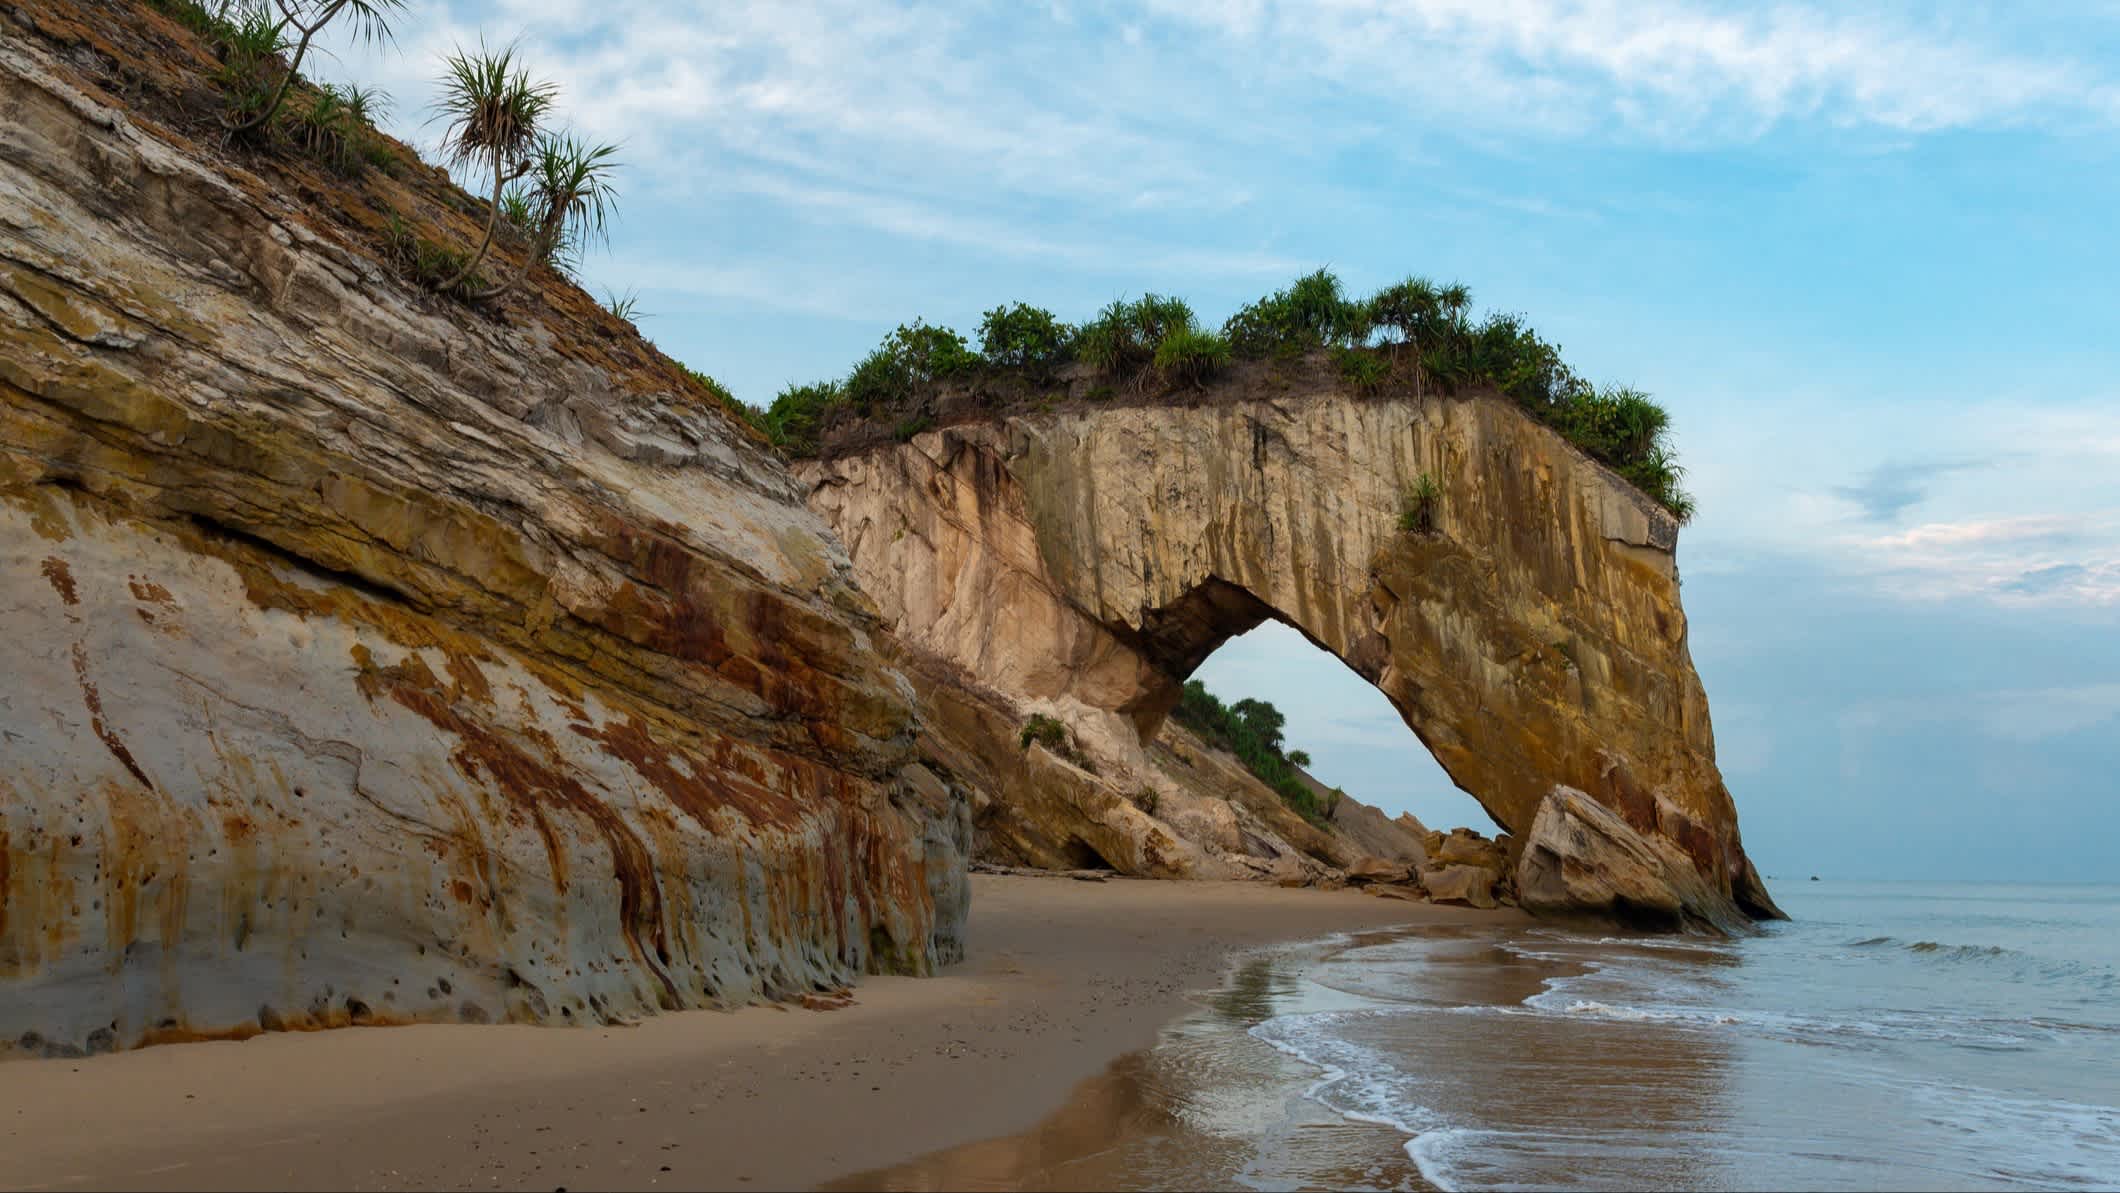 Klippen am natürlichen Sandstrand Bakam Beach, Sarawak, Malaysia mit Blick auf einen imposanten Felsbogen.